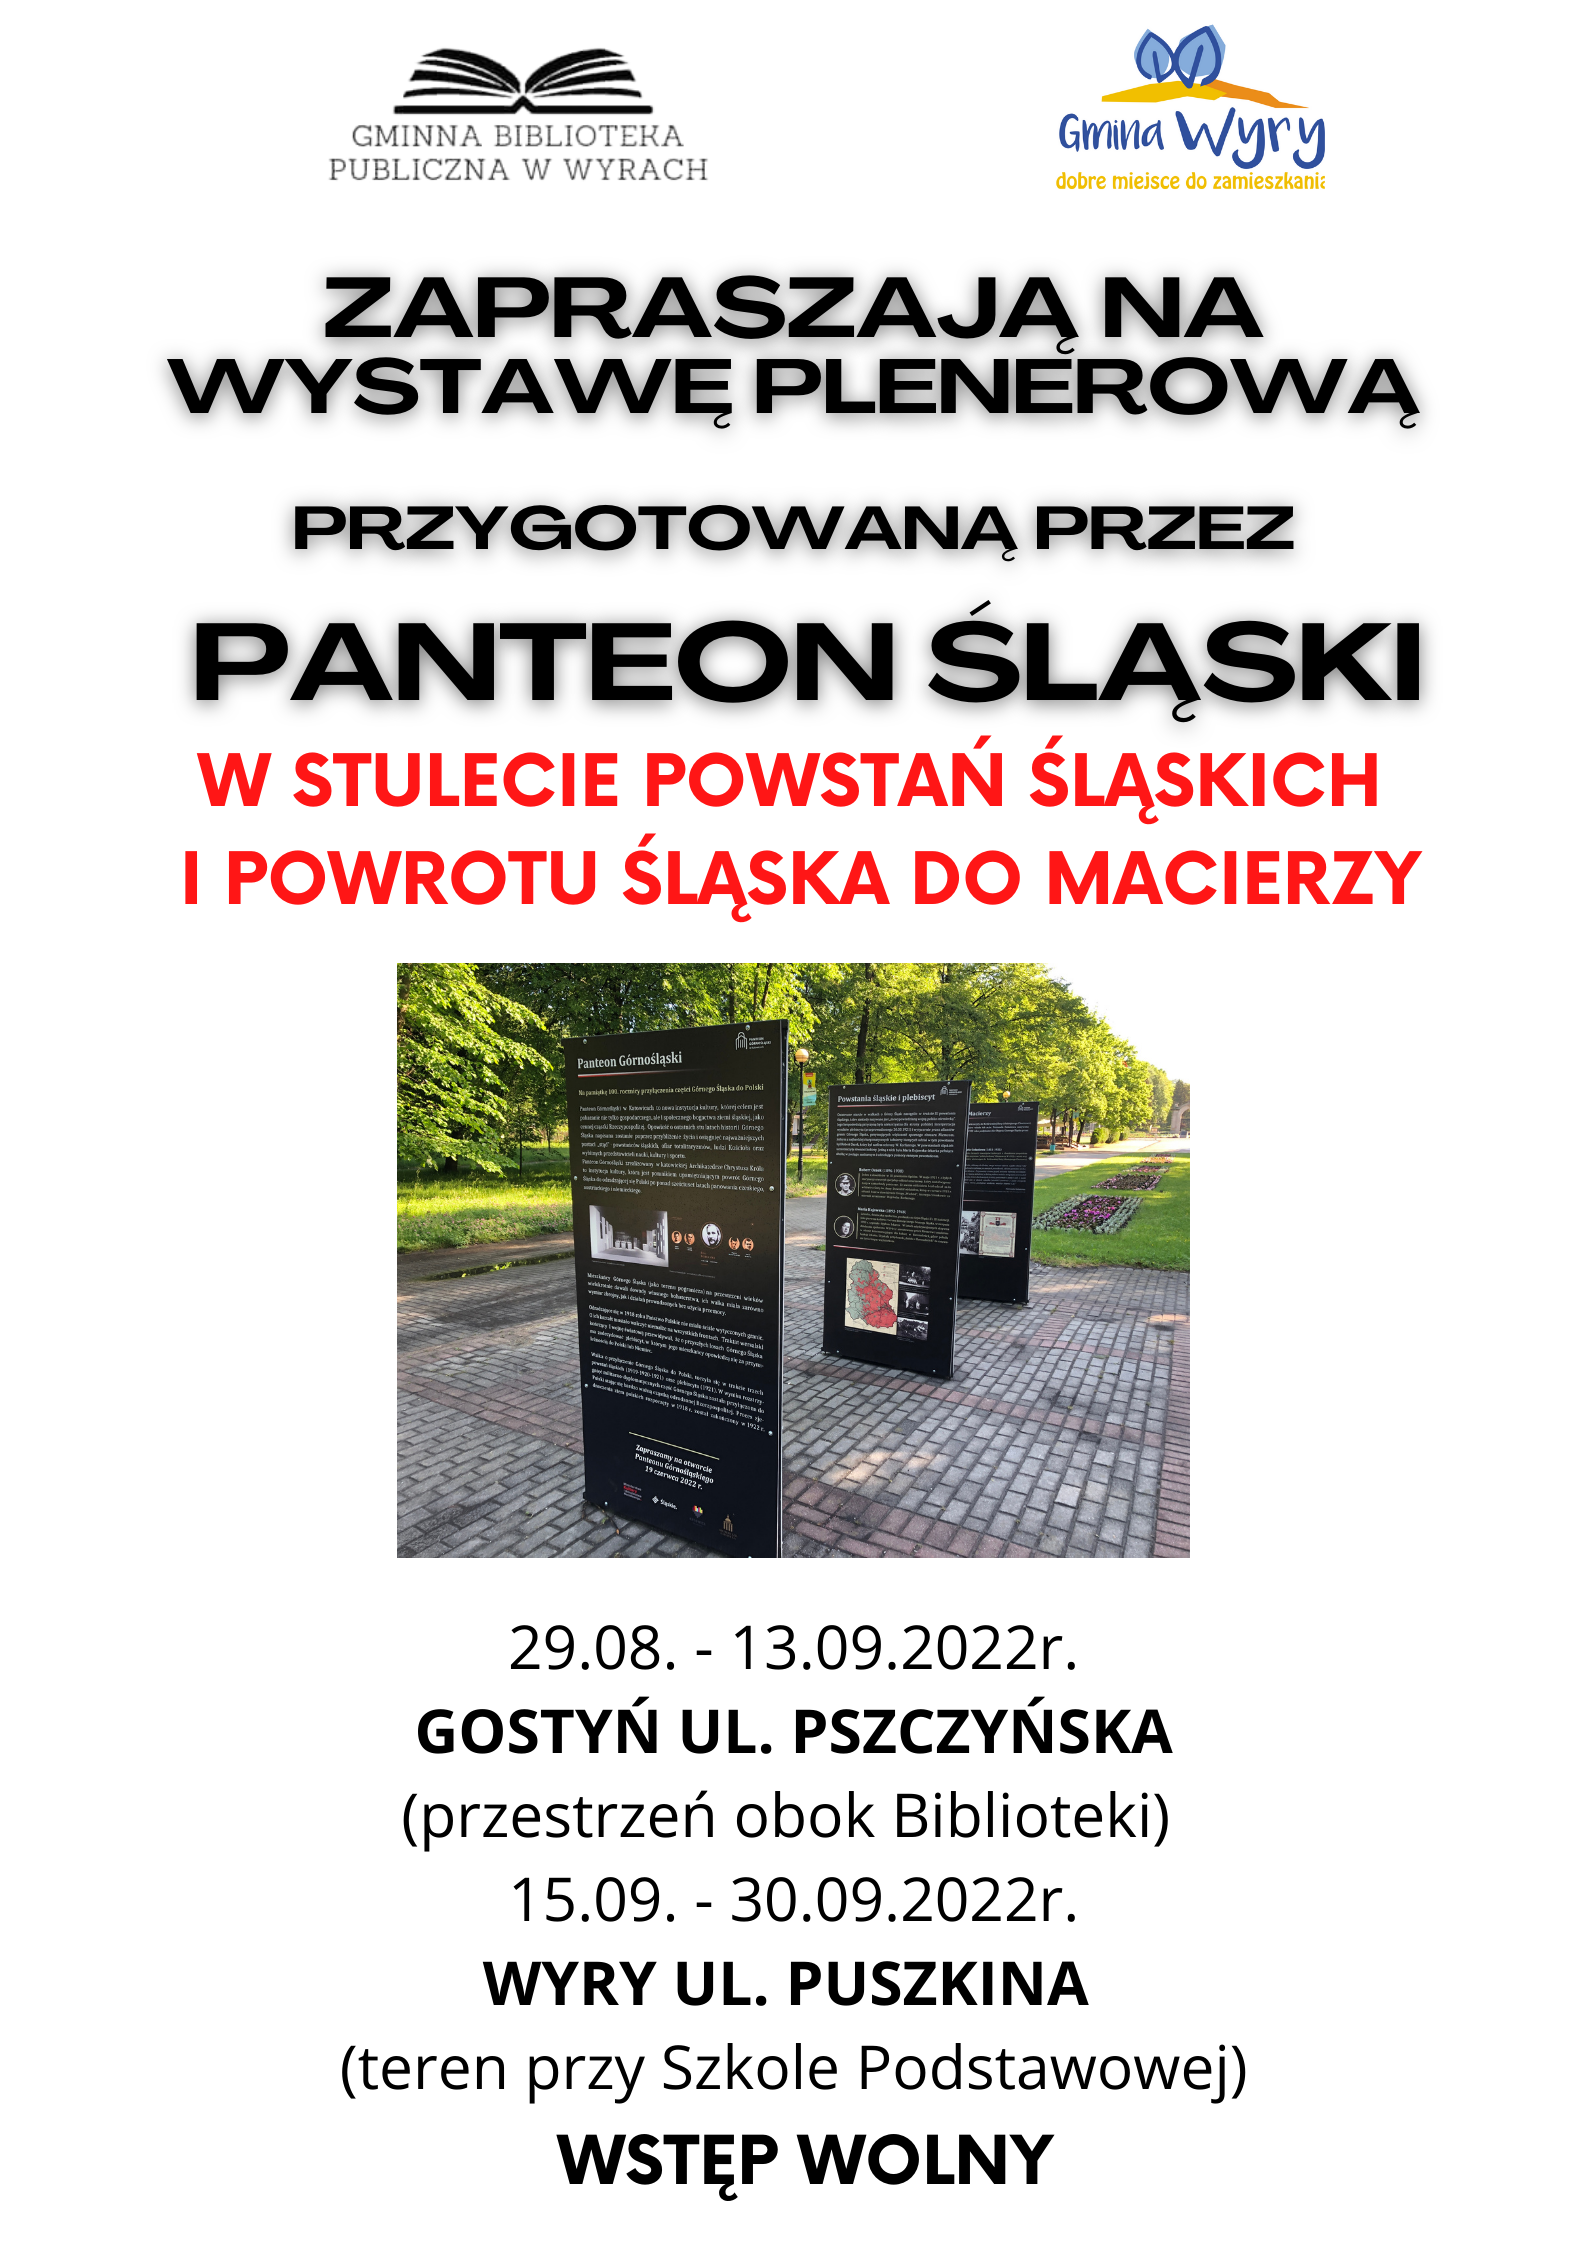 Plenerowa wystawa poświęcona Powstaniom Śląskim już od 29 sierpnia w Gostyni.png